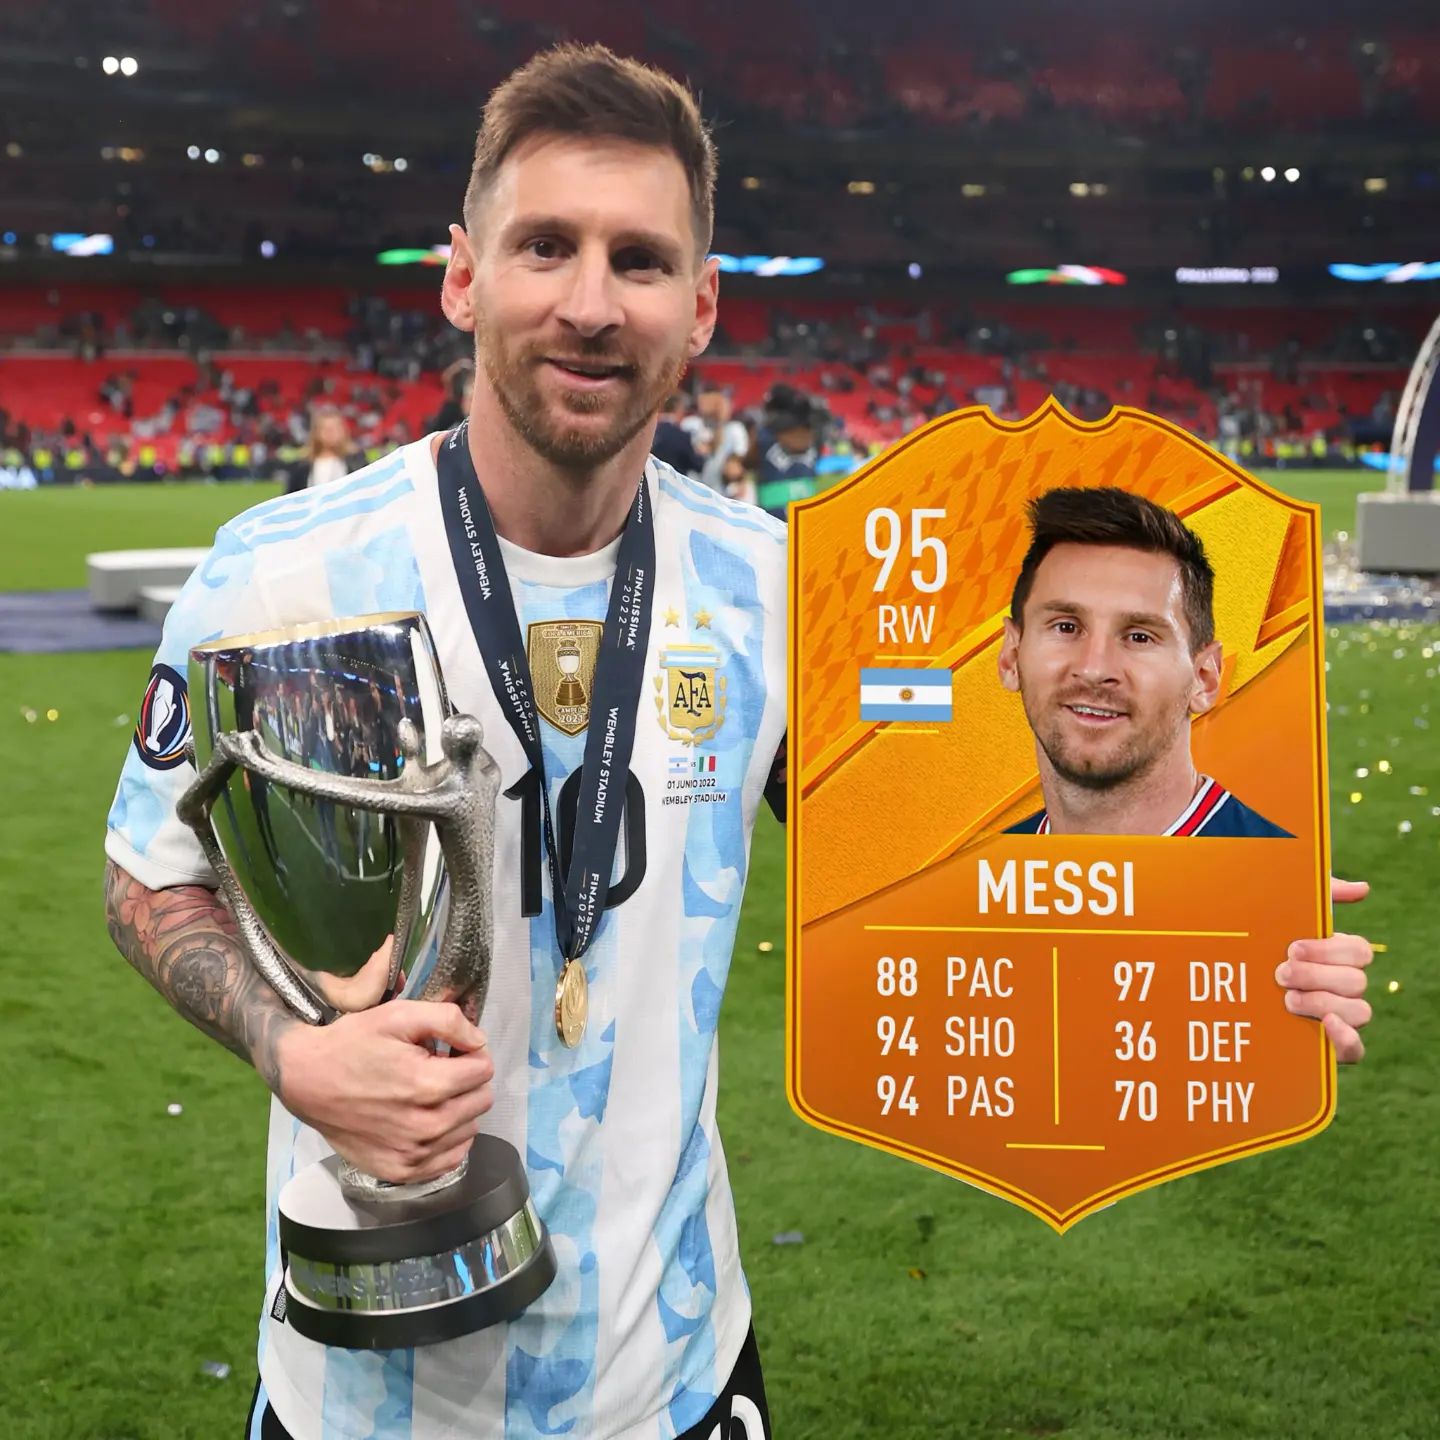 Finalissima 2022 💪

Lionel Messi Man of the match 💯👌

#finalissima #finalissima2022 #motm #messi #argentina #italy #football #psg #lionelmessi #fifa #fifa22 #easportsfifa22 #ultimateteam #futpark